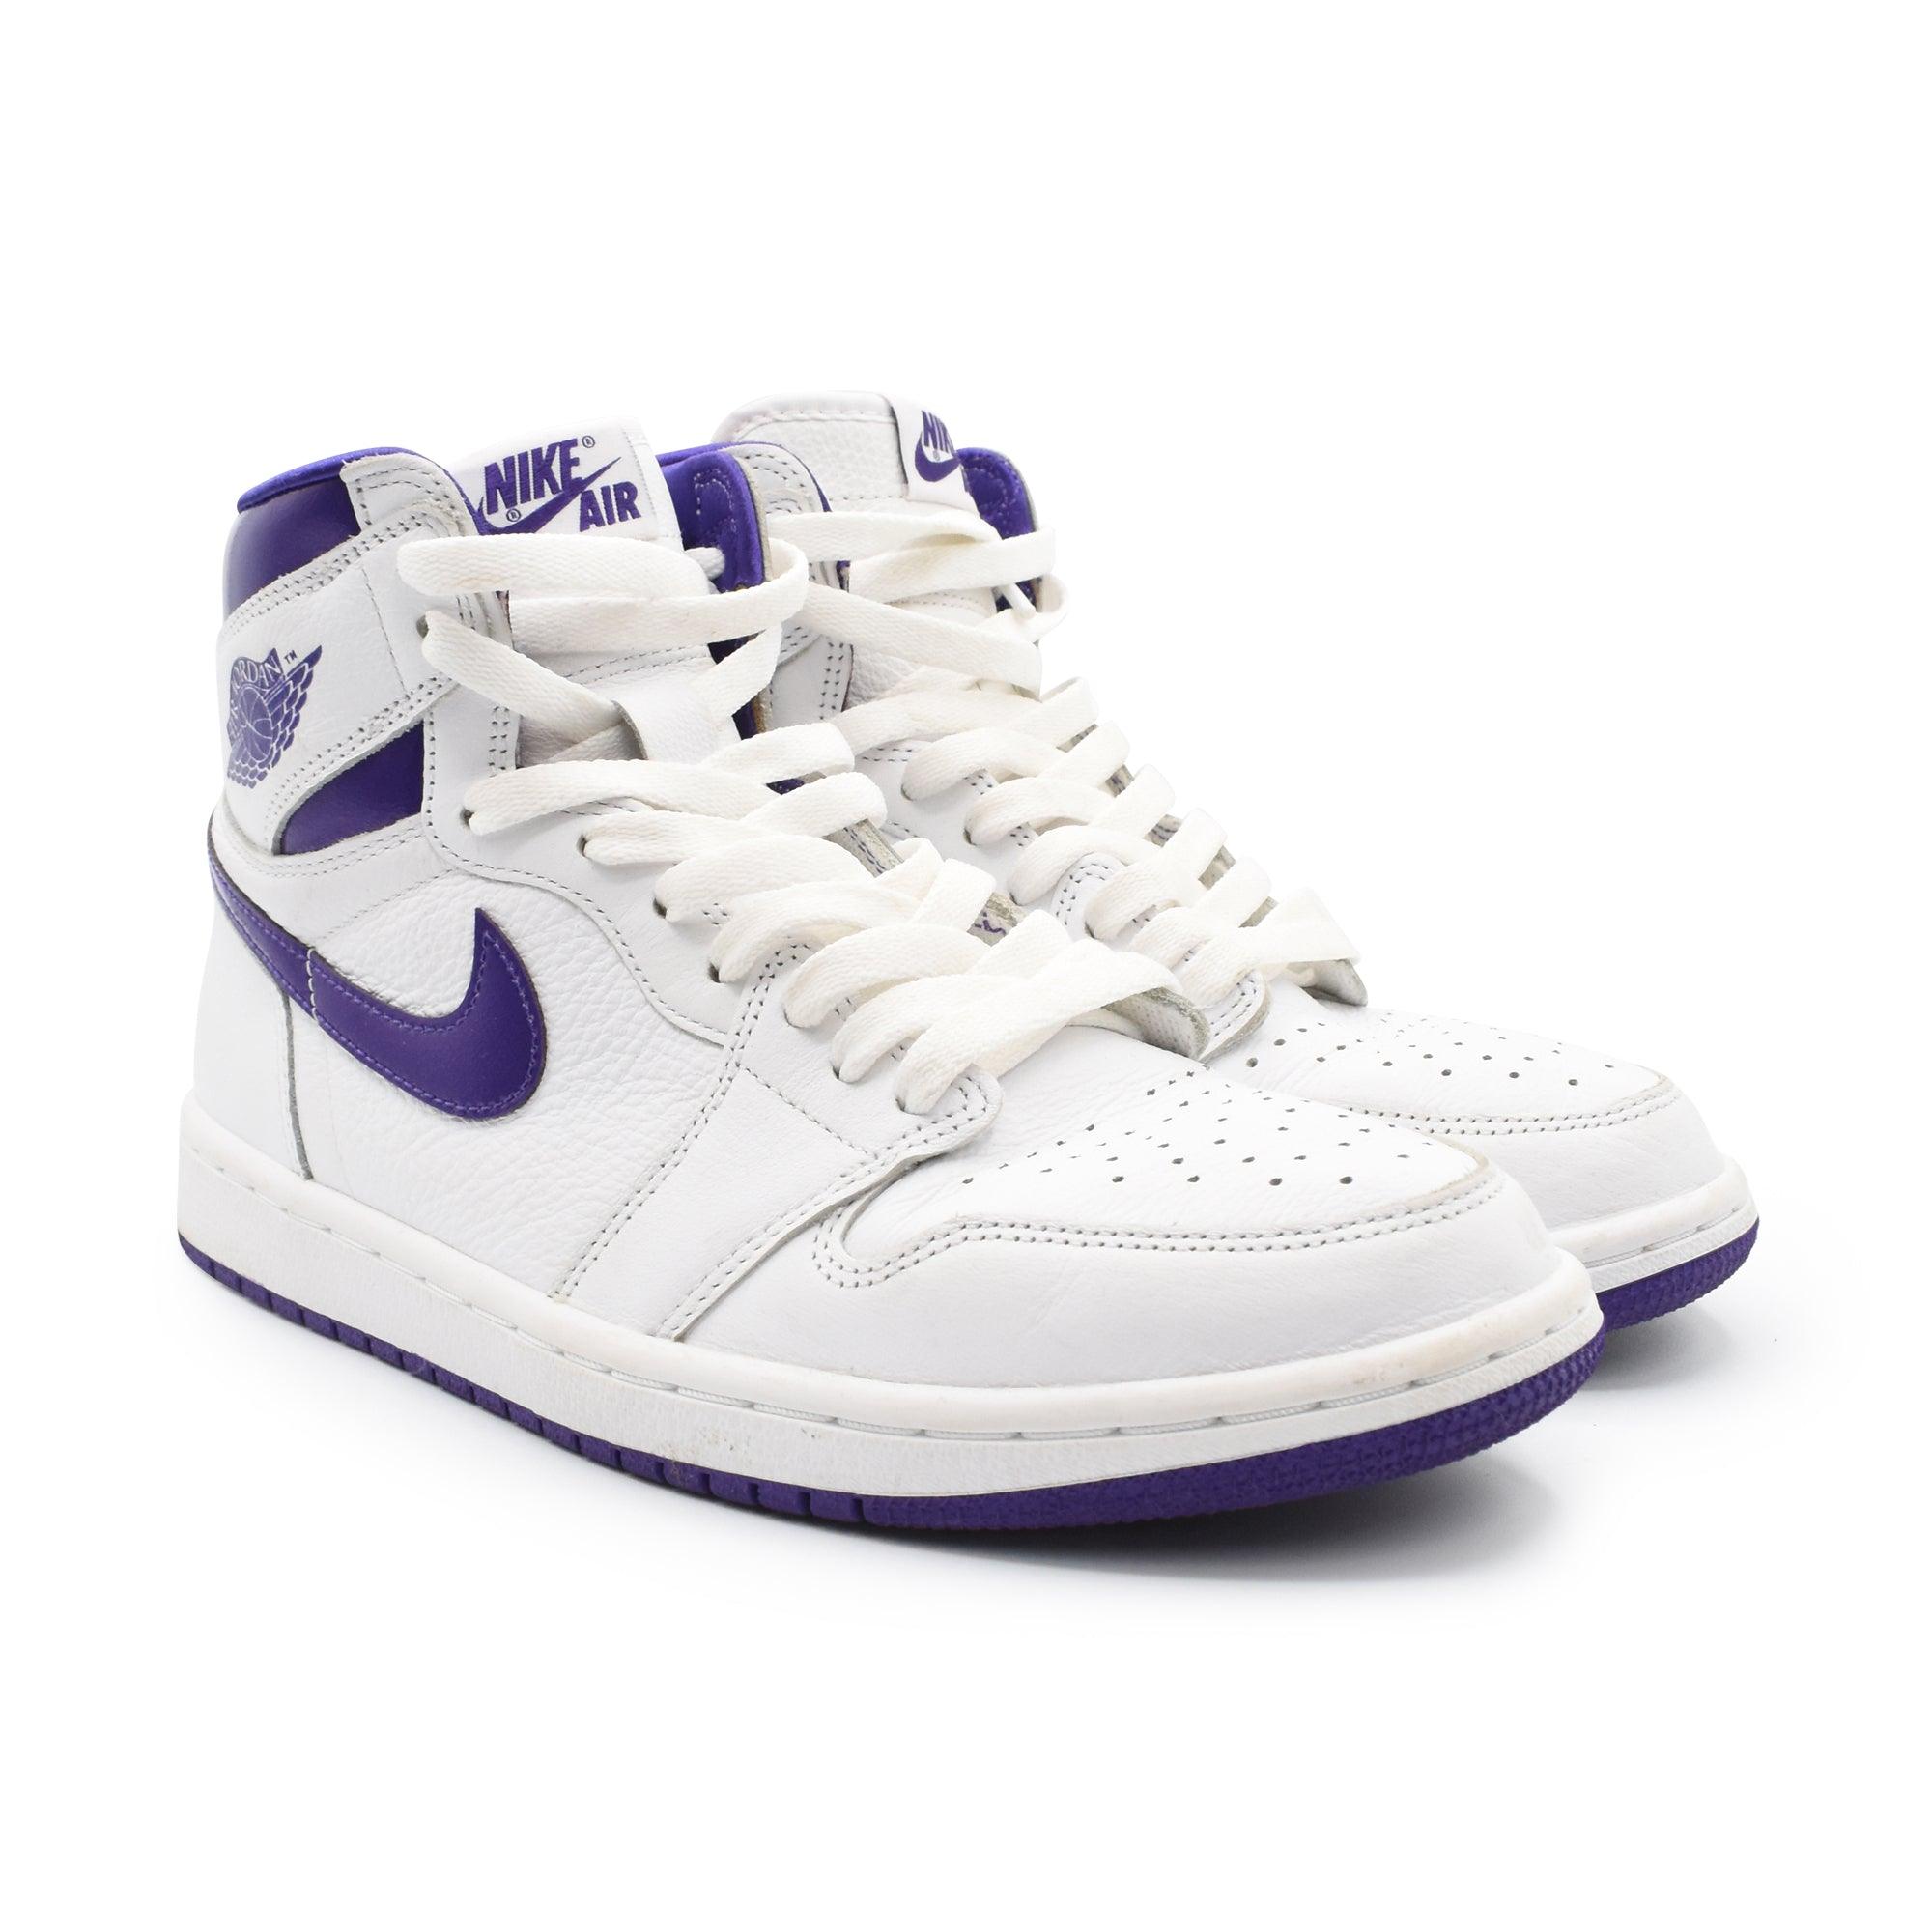 Nike 'Jordan 1 High OG' Sneakers - Men's 8.5 - Fashionably Yours